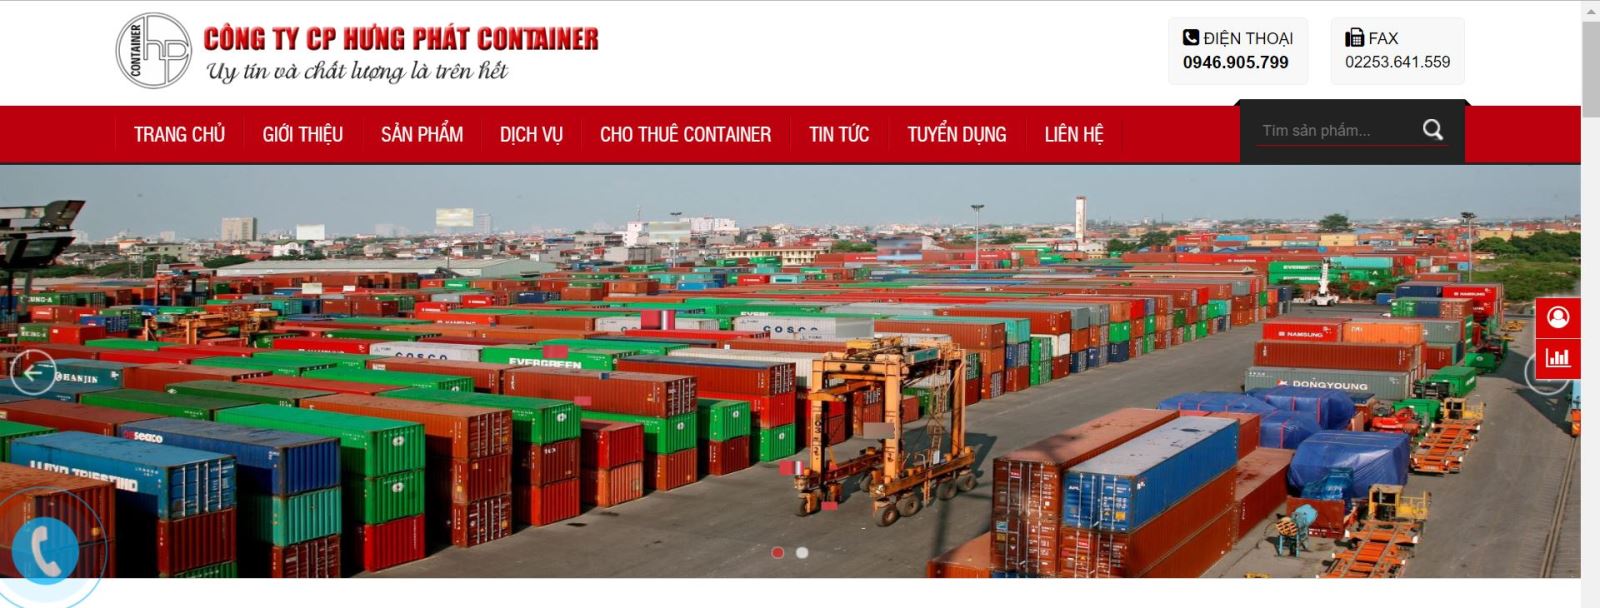 Top 1 địa chỉ bán container cũ giá rẻ tại Hà Nội uy tín chất lượng tốt - Ảnh 1